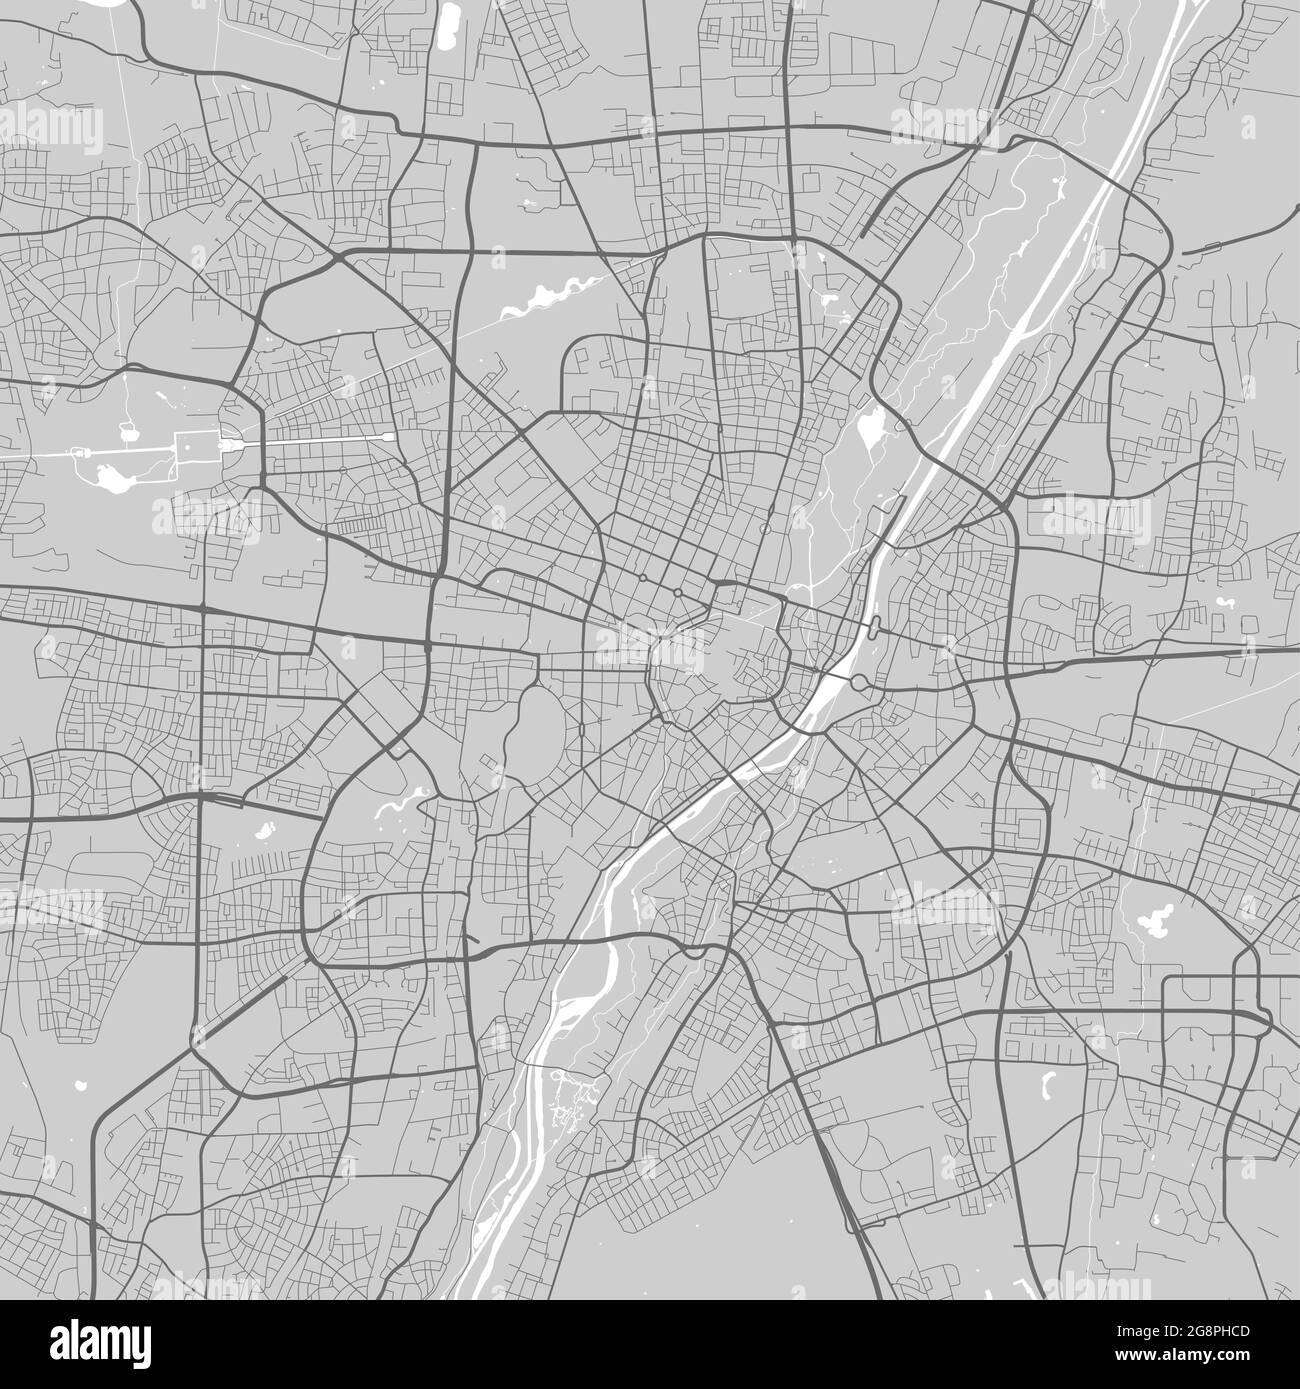 Mapa urbano de Munich. Ilustración vectorial, póster artístico en escala de grises del mapa de Múnich. Imagen del mapa de calles con carreteras, vista del área metropolitana de la ciudad. Ilustración del Vector